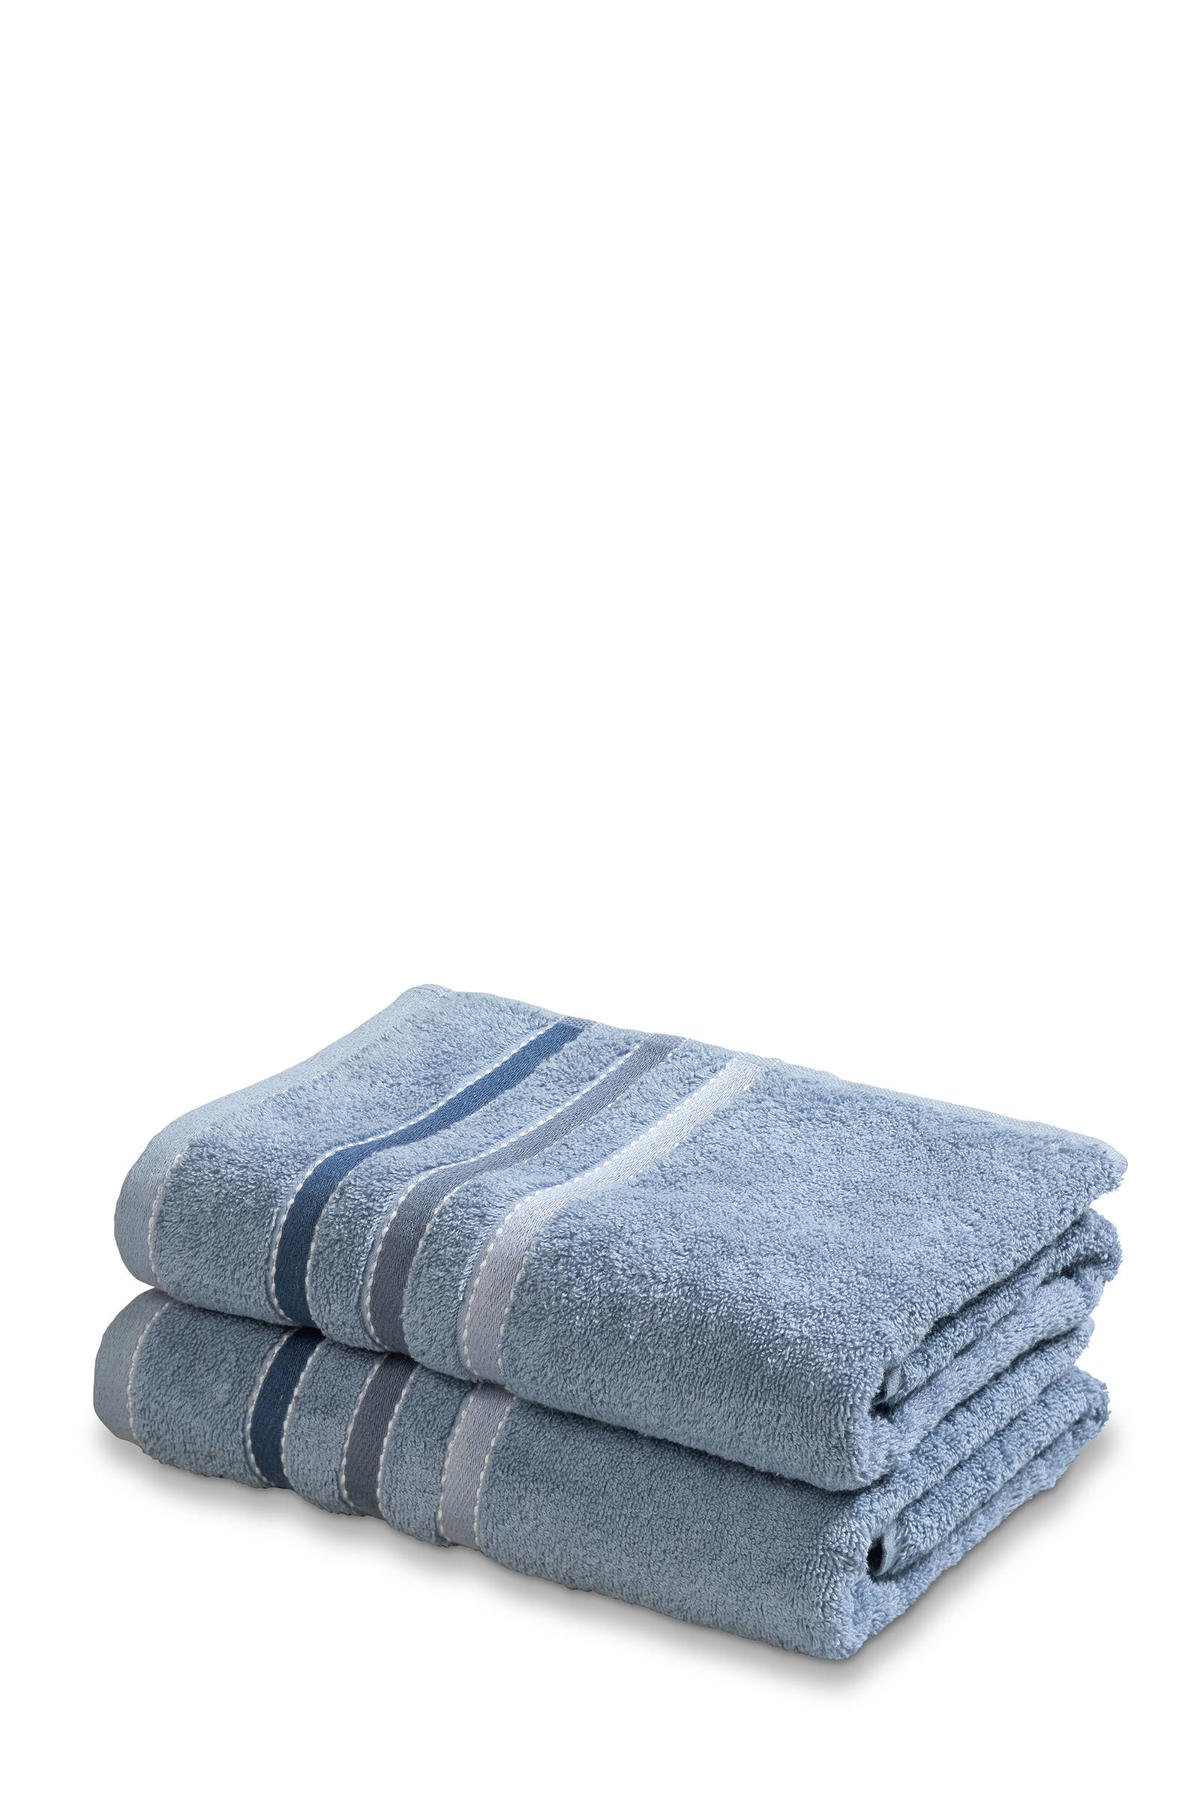 Vandyck handdoek Prestige Lines (set van 2) (110x60 cm) wehkamp